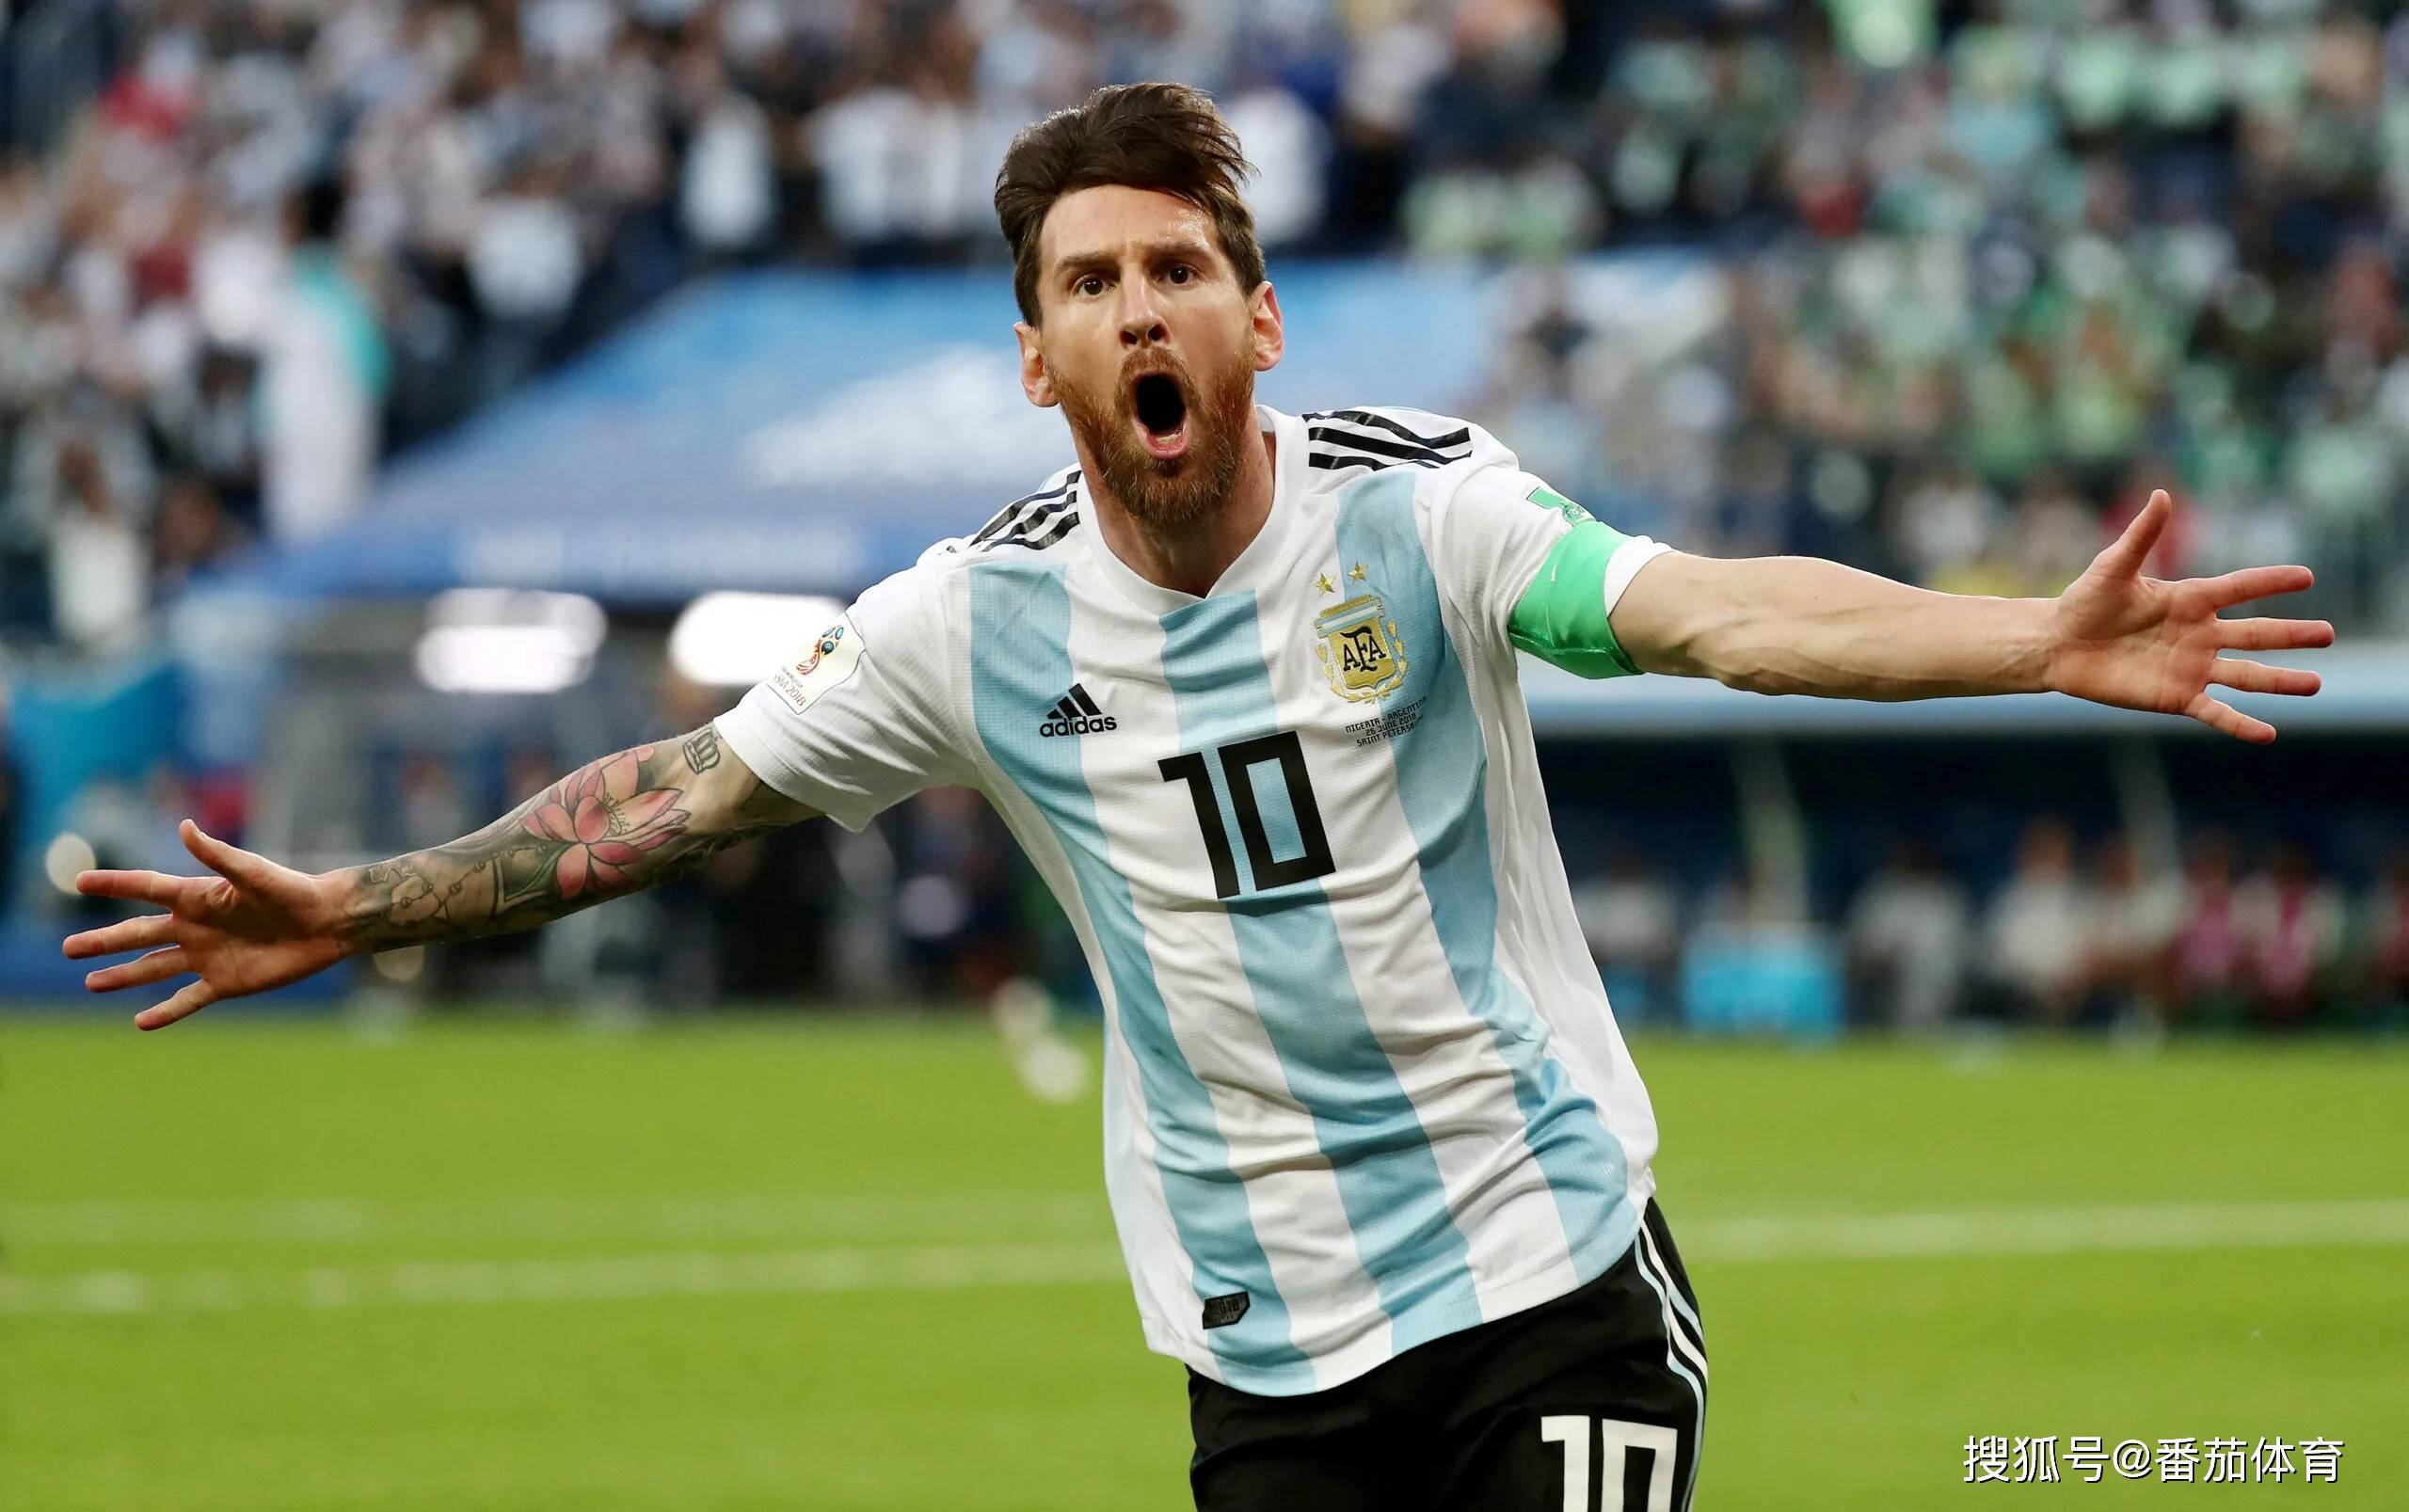 [2022世界杯]:阿根廷vs沙特阿拉伯,潘帕斯雄鹰展翅高飞